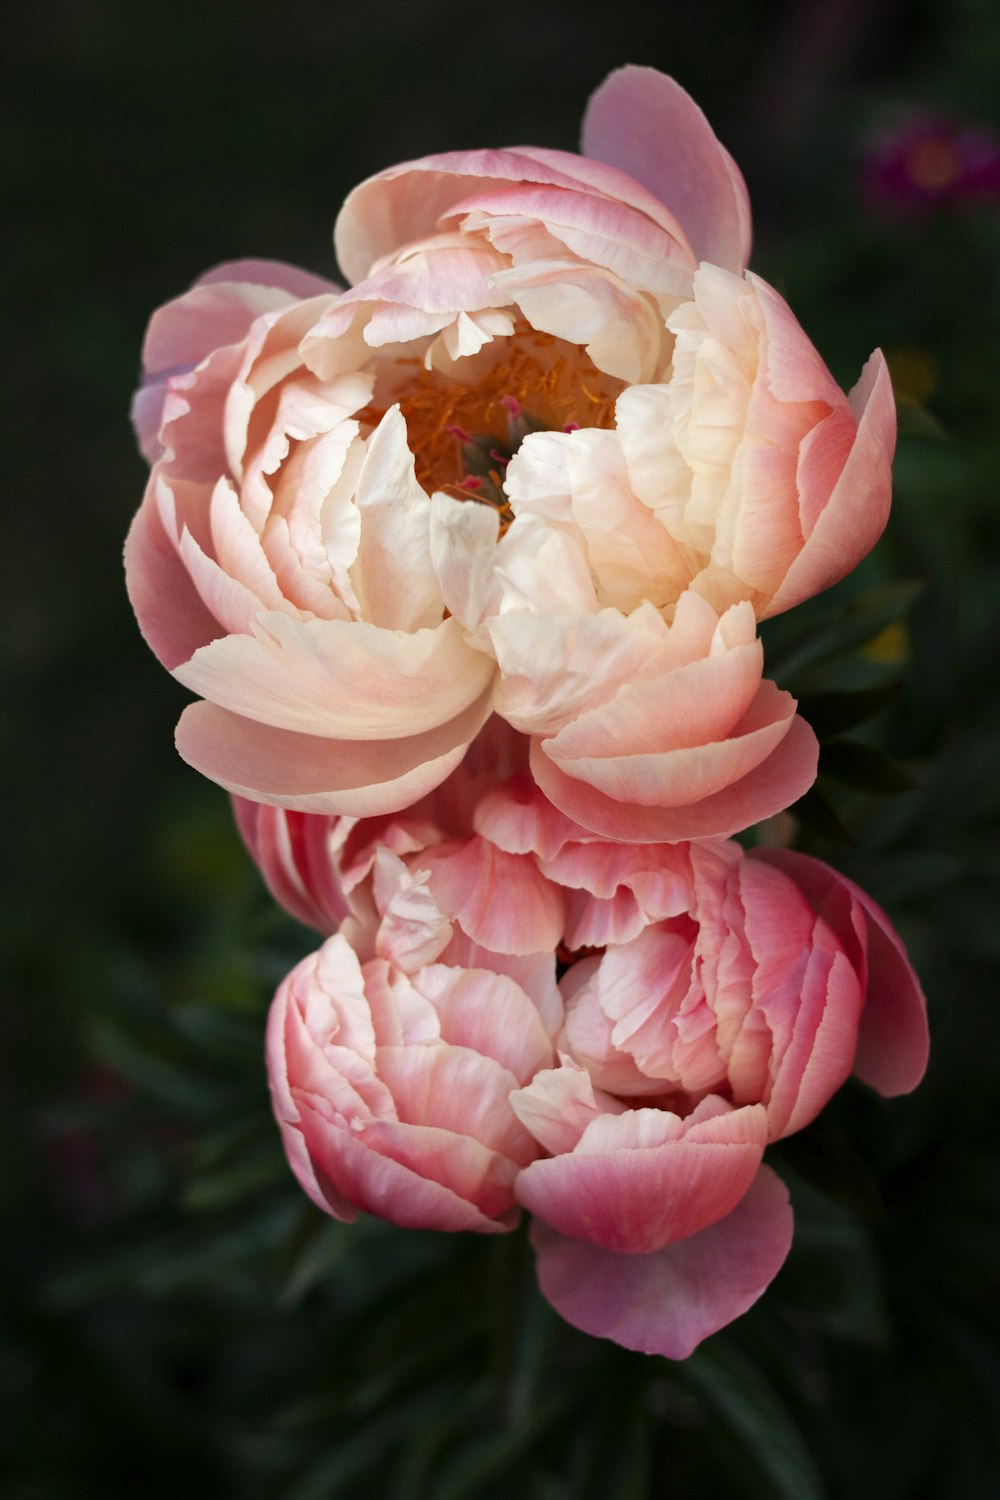 flor rosa e branca na lente tilt shift